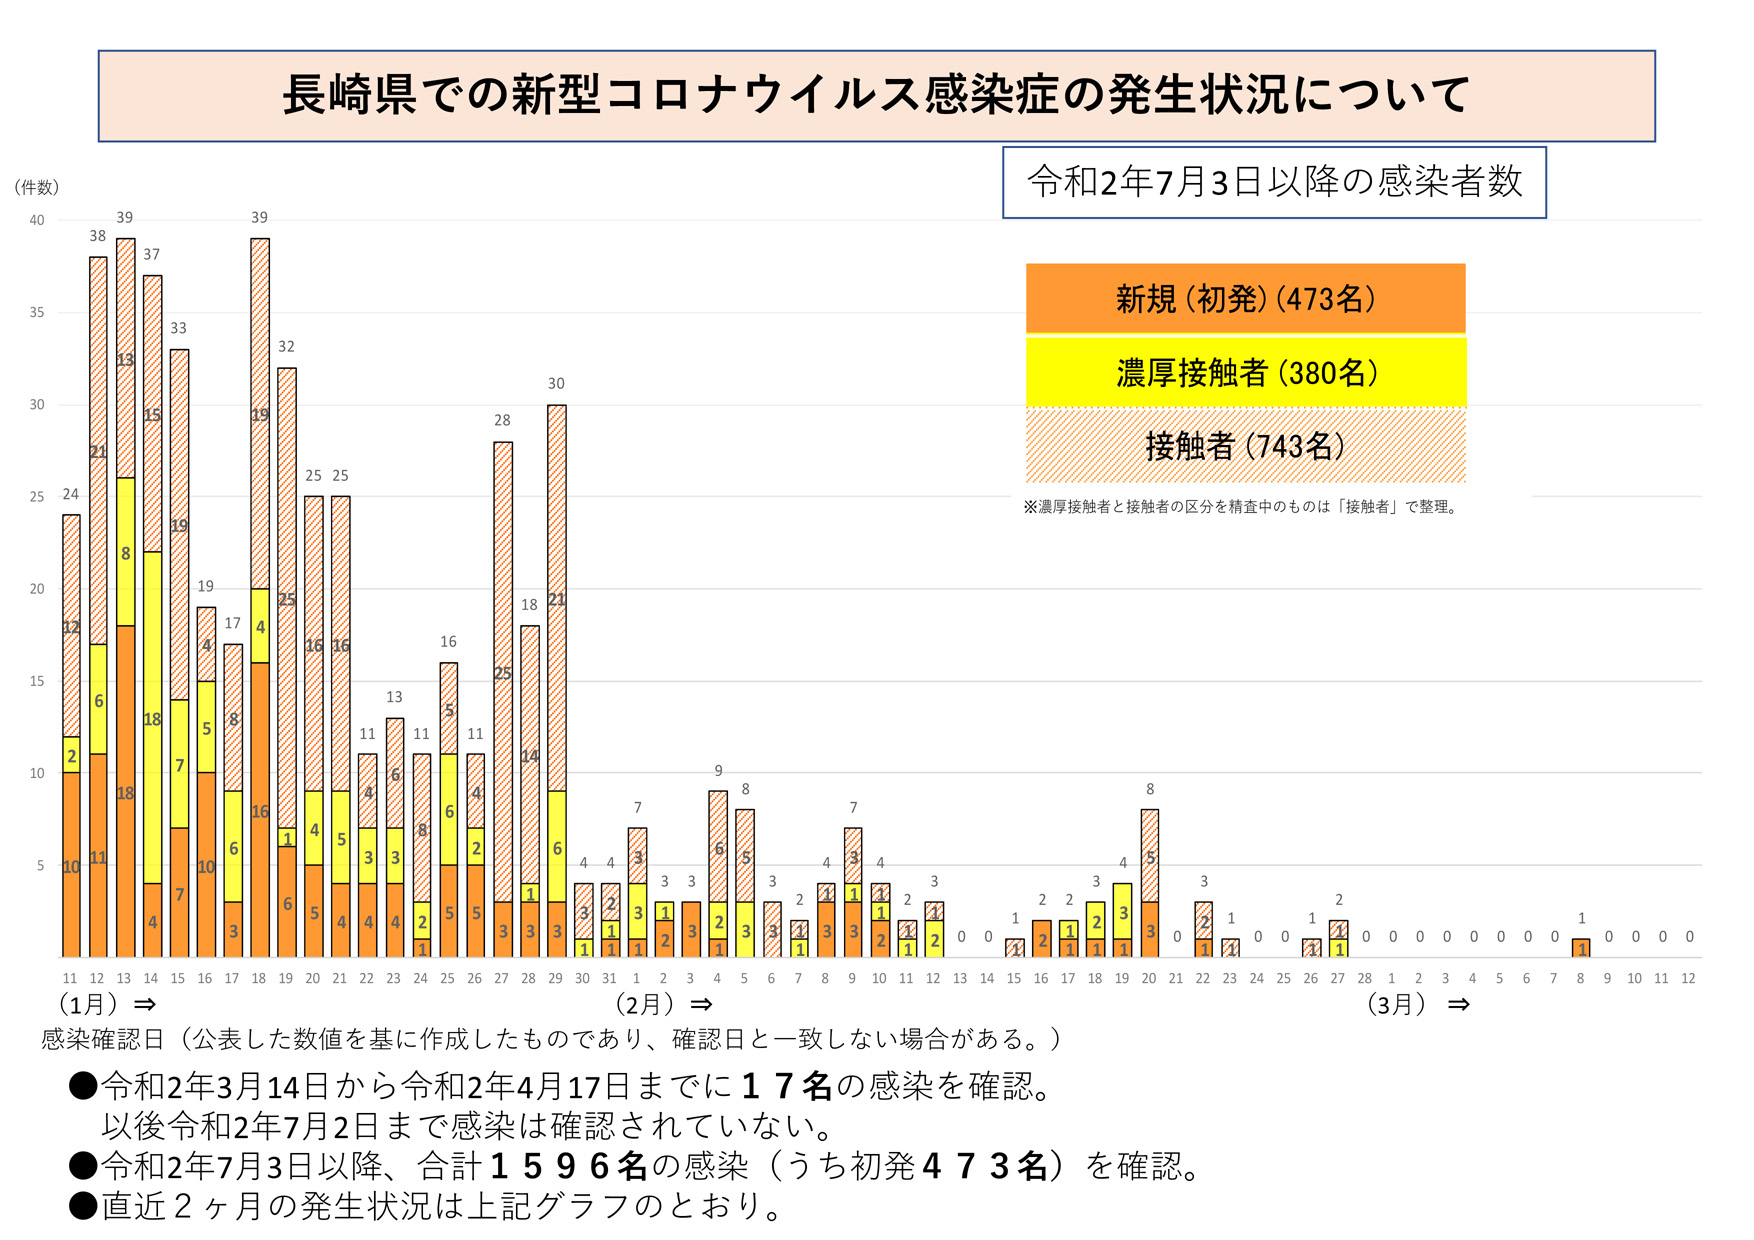 長崎県での新型コロナウイルス感染症の発生状況について